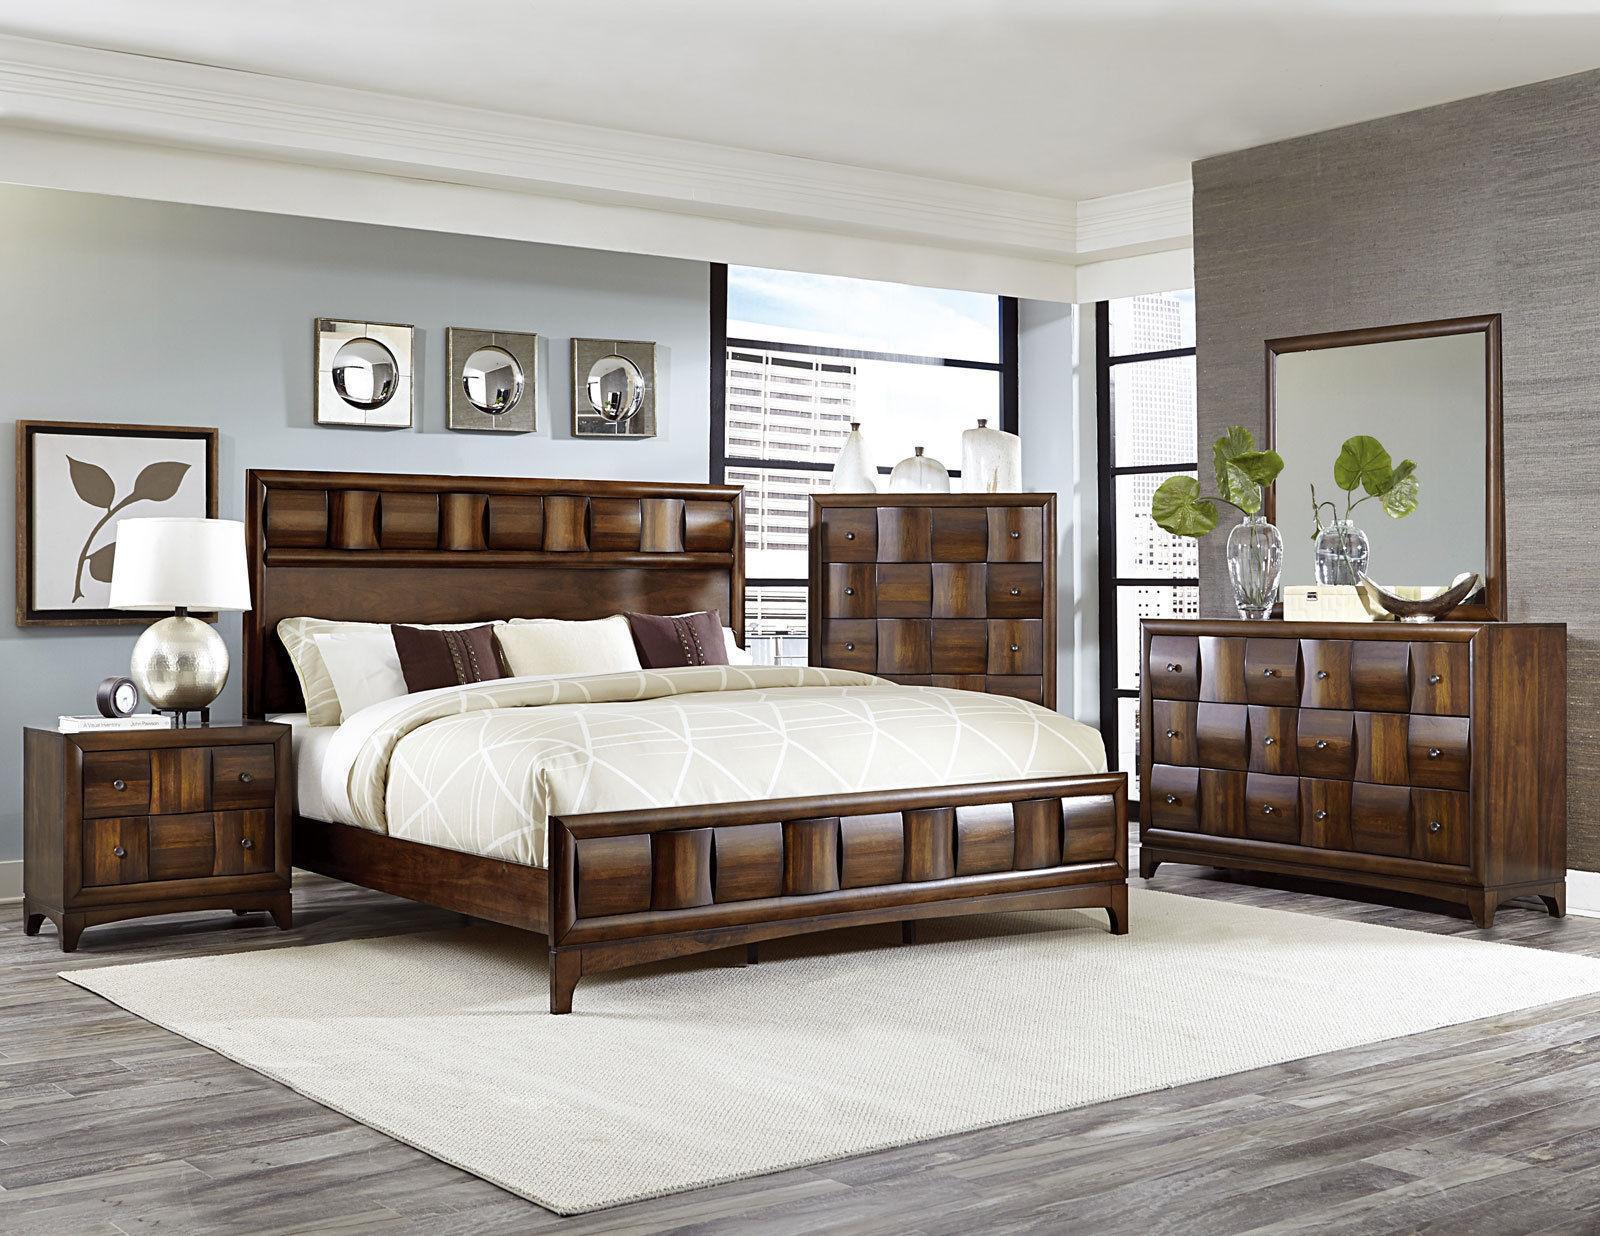 walnut bedroom furniture for sale